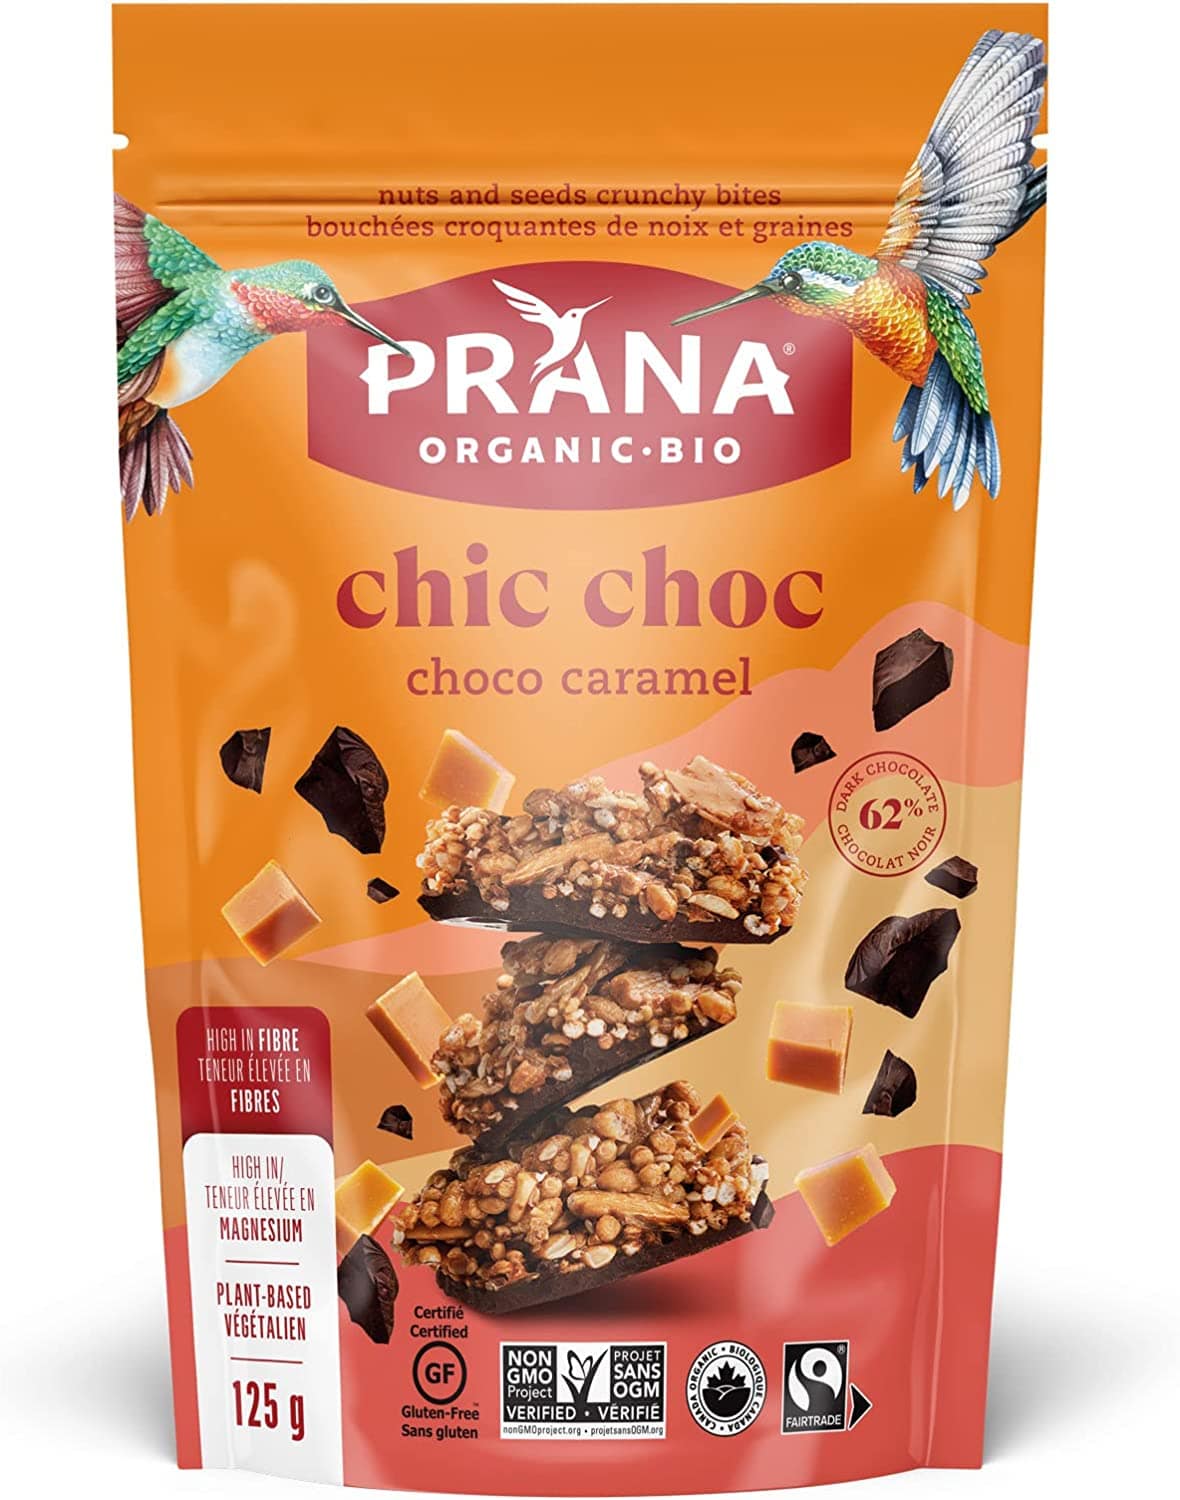 PRANA Épicerie Chic choc Bouchées croquantes chocolat et caramel bio 125g